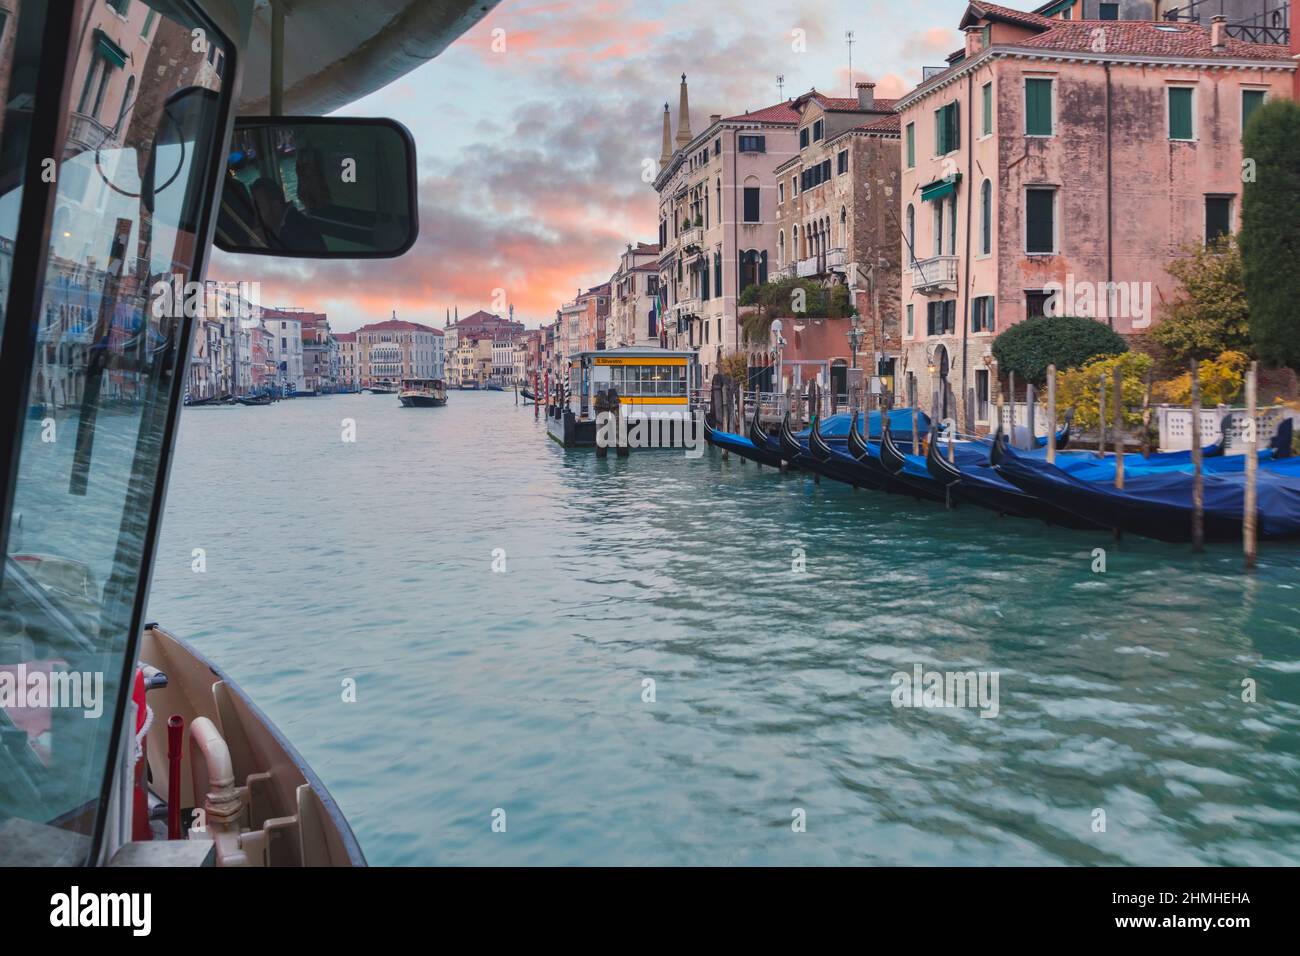 Italia, Veneto, Venezia, gondole veneziane e palazzi che si affacciano sul Canal Grande, vista da un vaporetto in navigazione Foto Stock